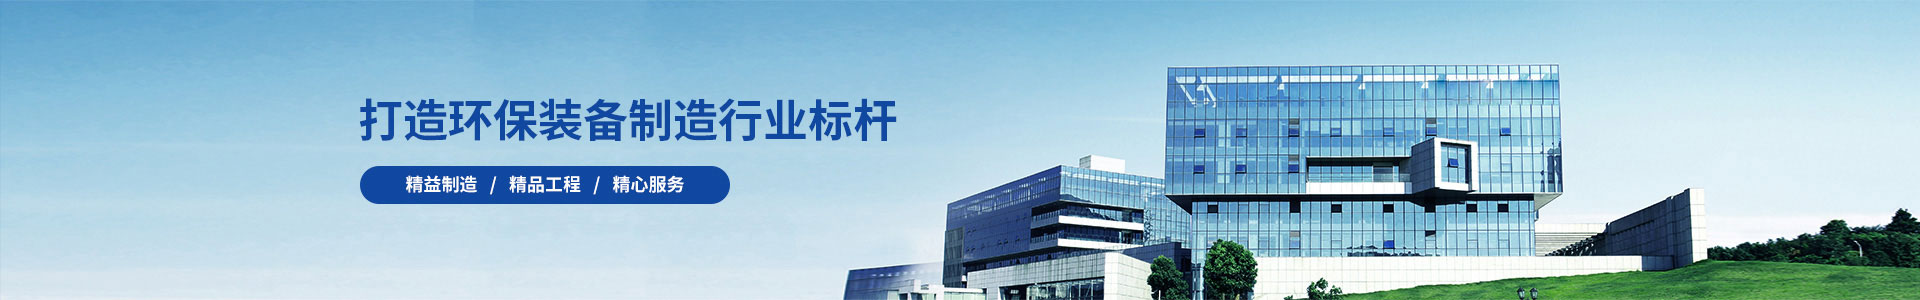 公司简介-PBOOTCMS智能环保机械五金设备类企业网站s模板蓝色营销型源码(PC+WAP)